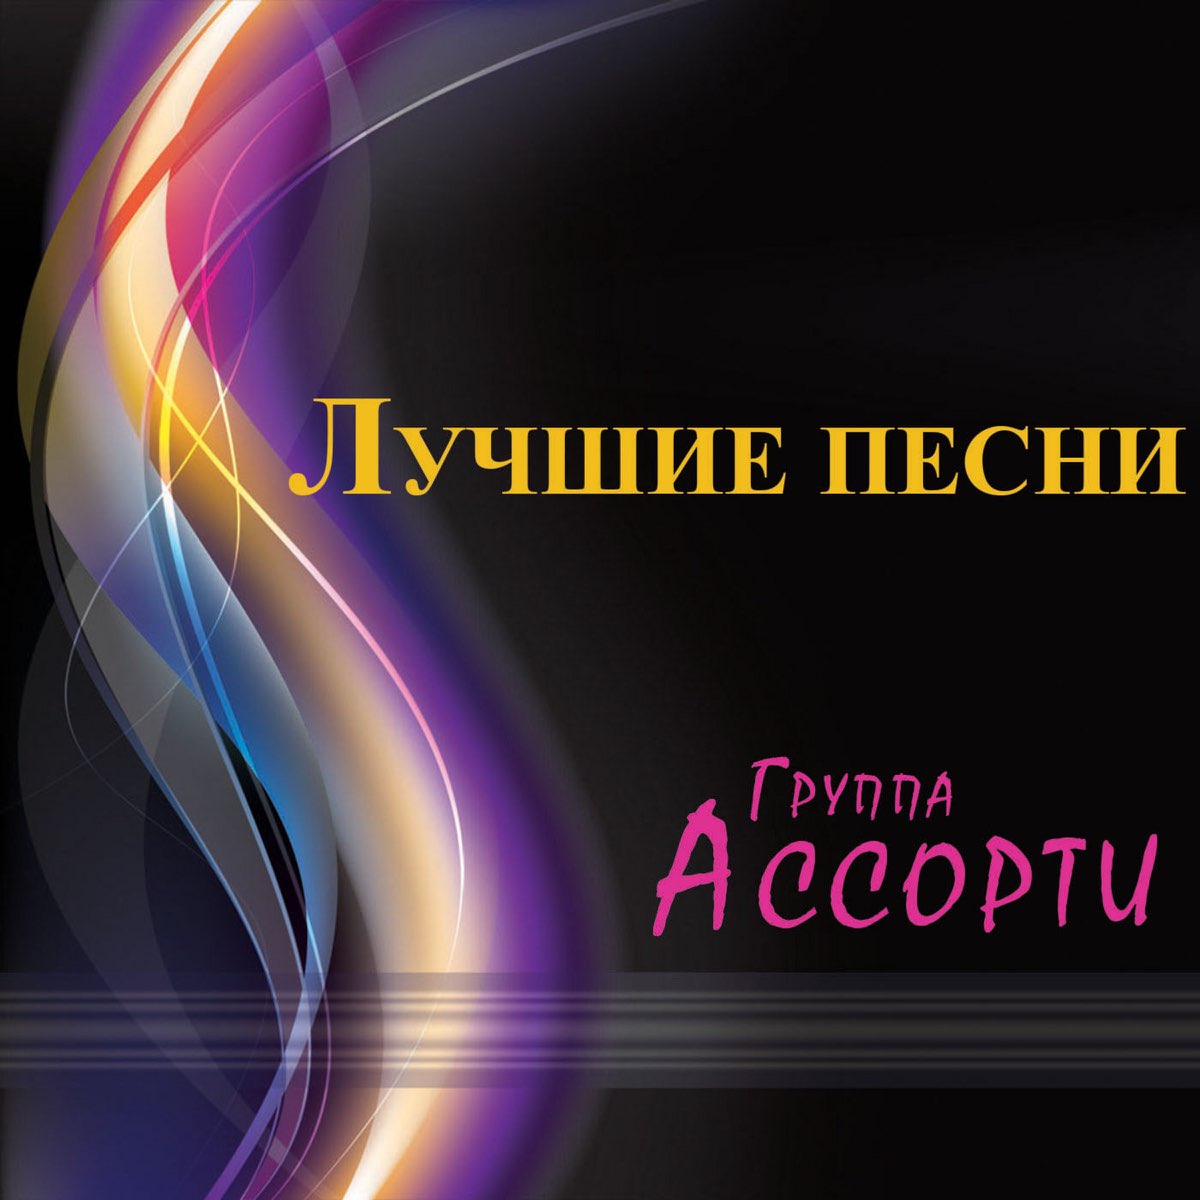 Ассорти — три белых коня (Ayur Tsyrenov Remix). Группа неземное Притяжение. Ассорти из песен 7 букв